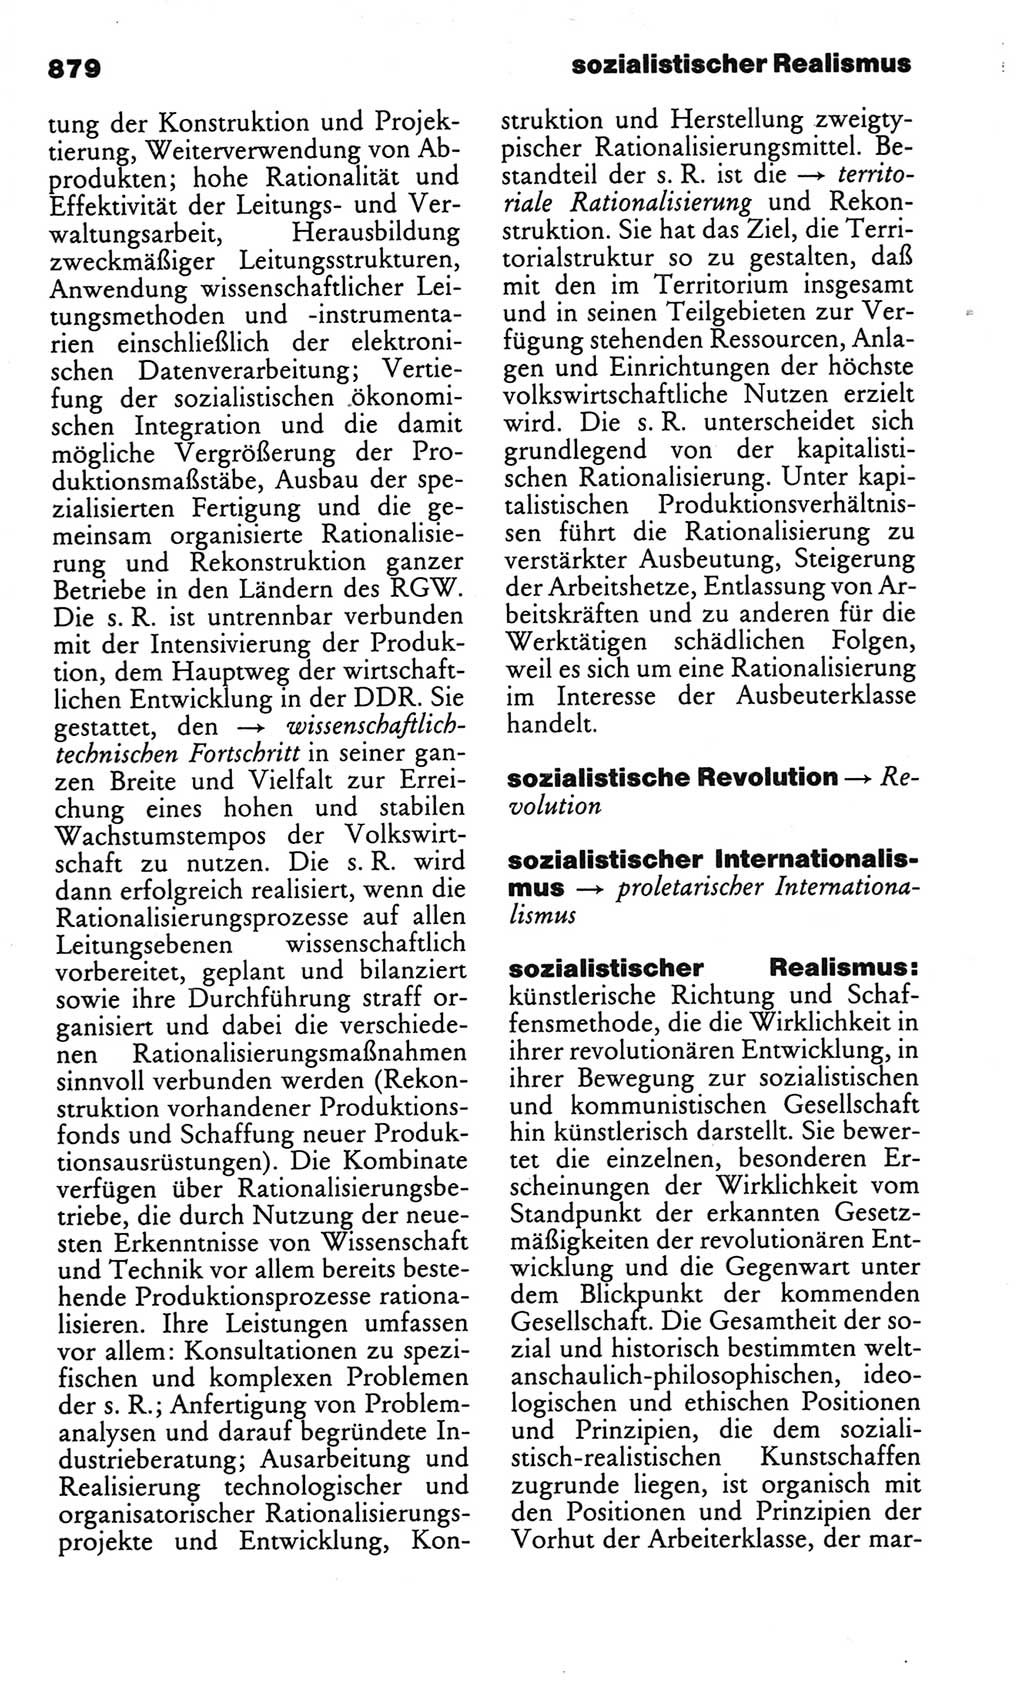 Kleines politisches Wörterbuch [Deutsche Demokratische Republik (DDR)] 1986, Seite 879 (Kl. pol. Wb. DDR 1986, S. 879)